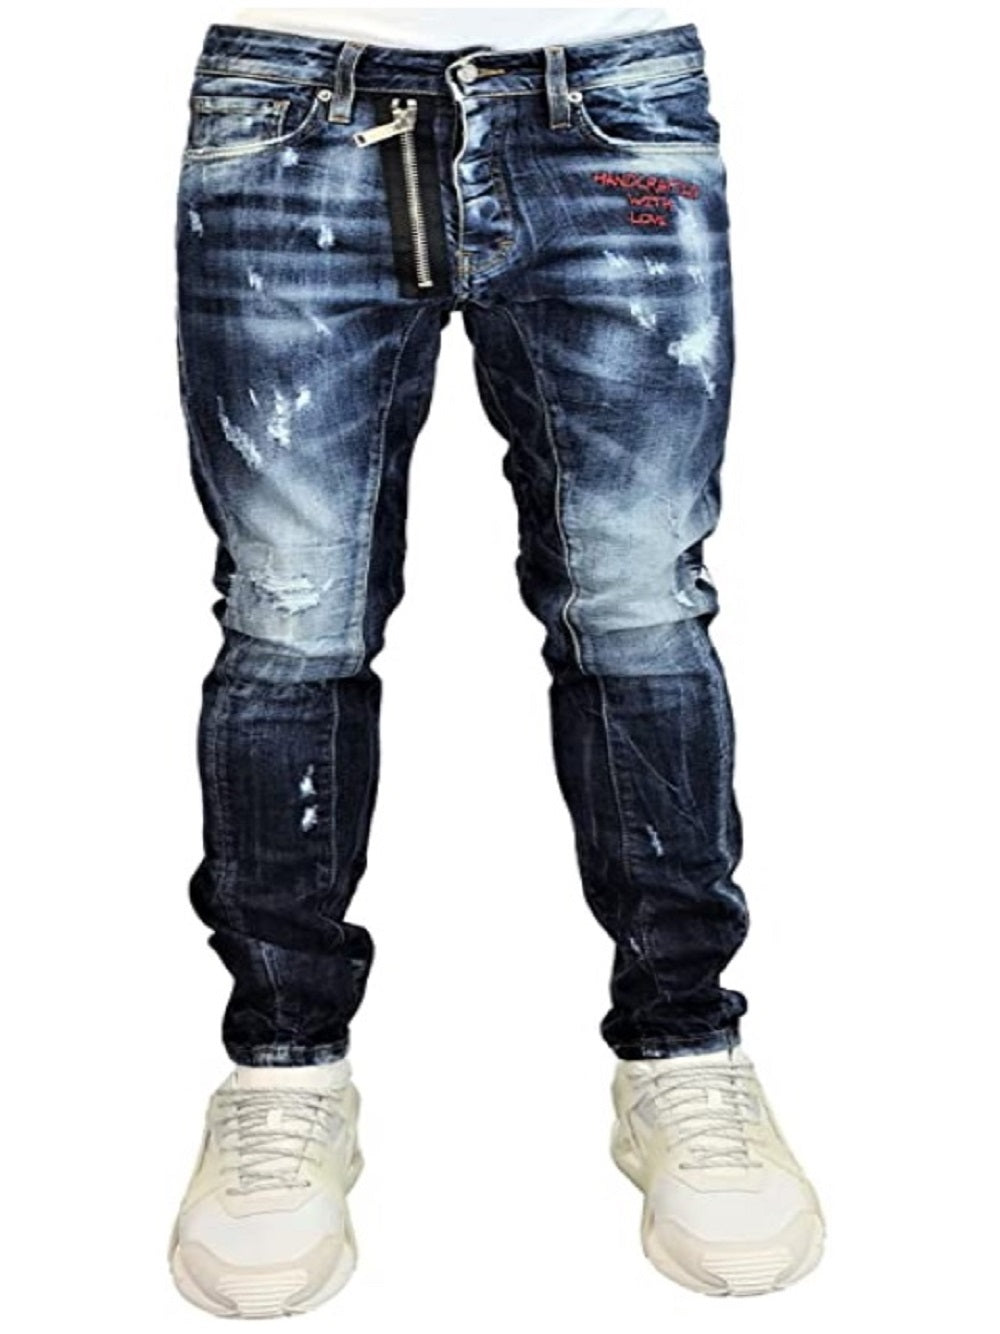 Jeans G2FIRENZE WITH LOVE536 Chiusura con bottoni Strappi sulla parte anteriore e posteriore Applicazione logo sulla parte posteriore Applicazione cerniera sulla parte anteriore Dettaglio in cotone rosso sulla parte anteriore